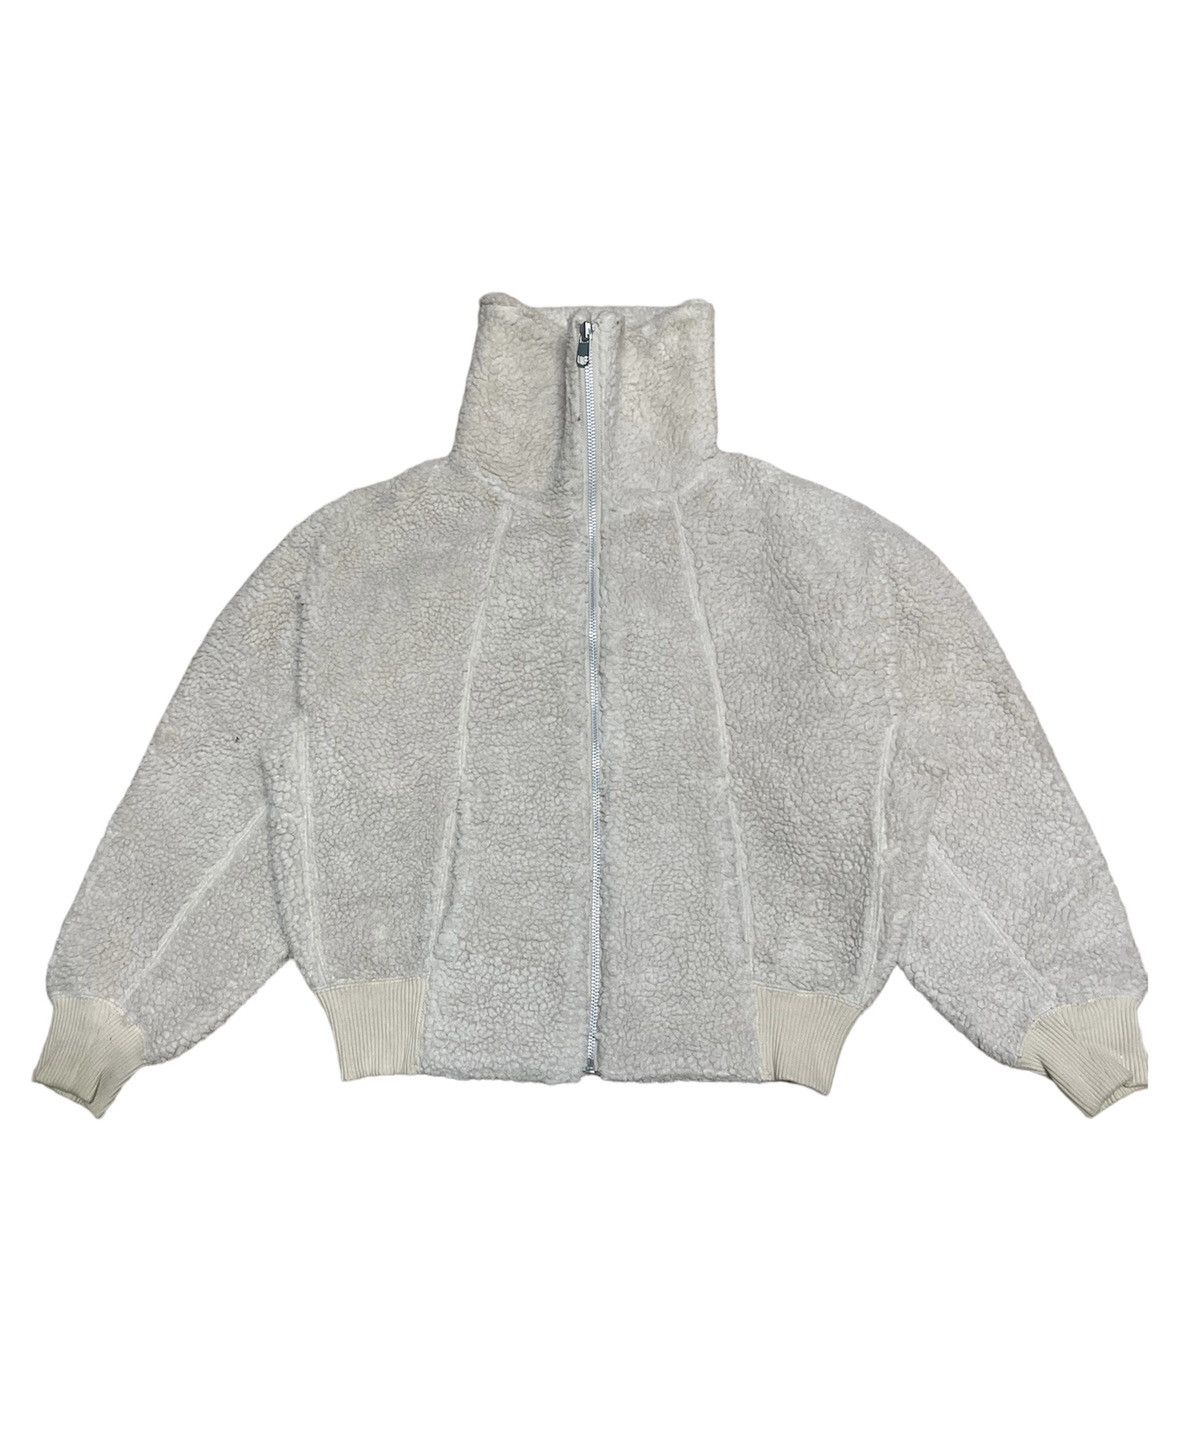 🔥NEED GONE🔥 Uniqlo Undercover Fleece Jacket - 2